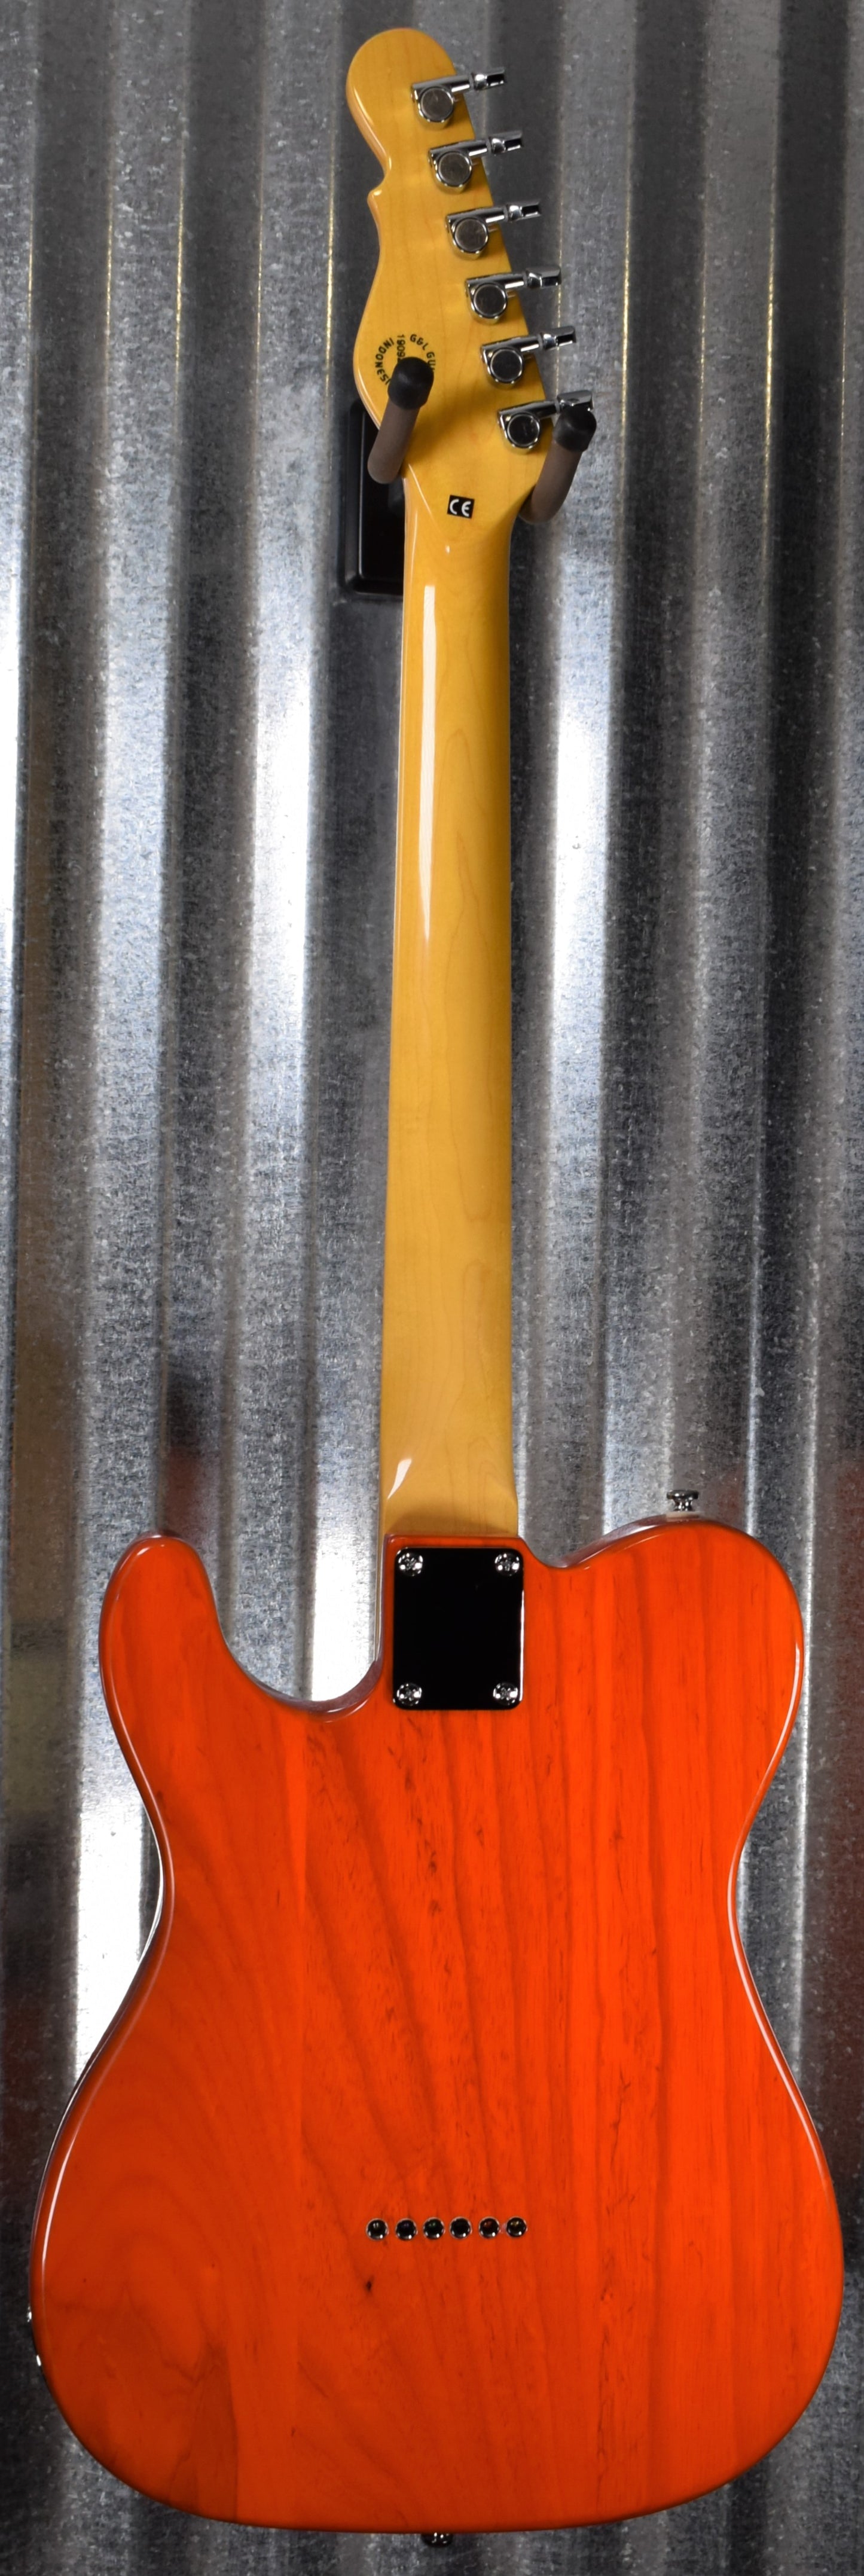 G&L Tribute ASAT Classic Clear Orange Guitar #0584 Demo